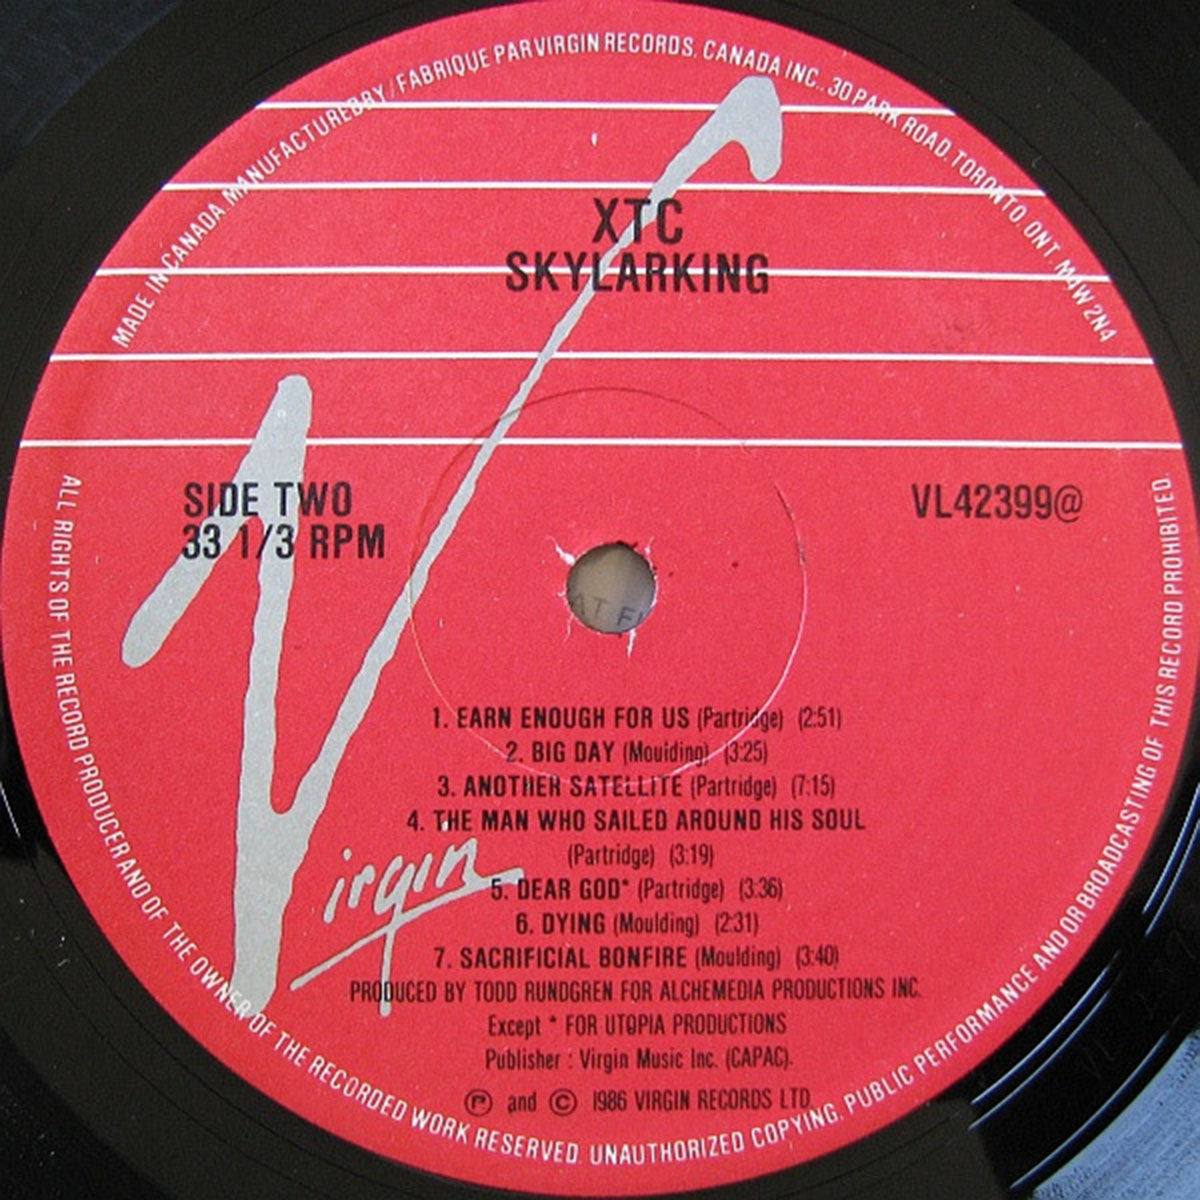 XTC – Skylarking - 1986